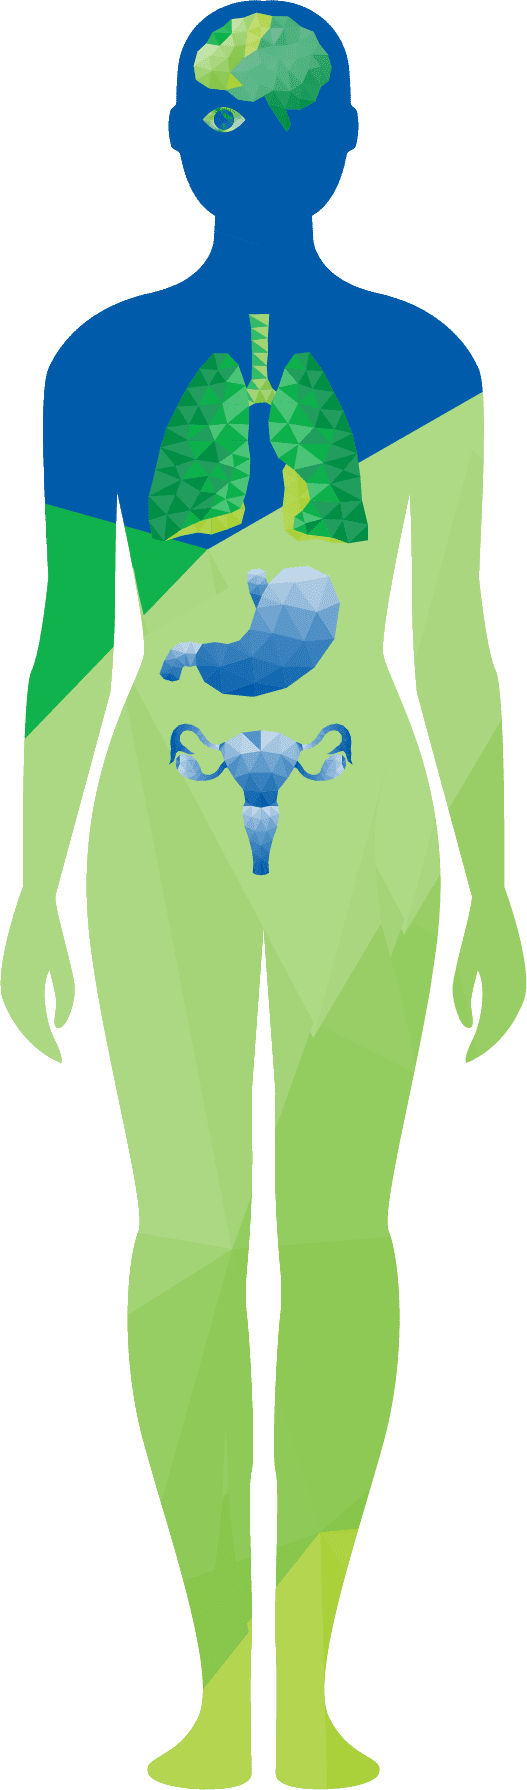 تروميد - رسم توضيحي لجسد المرأة